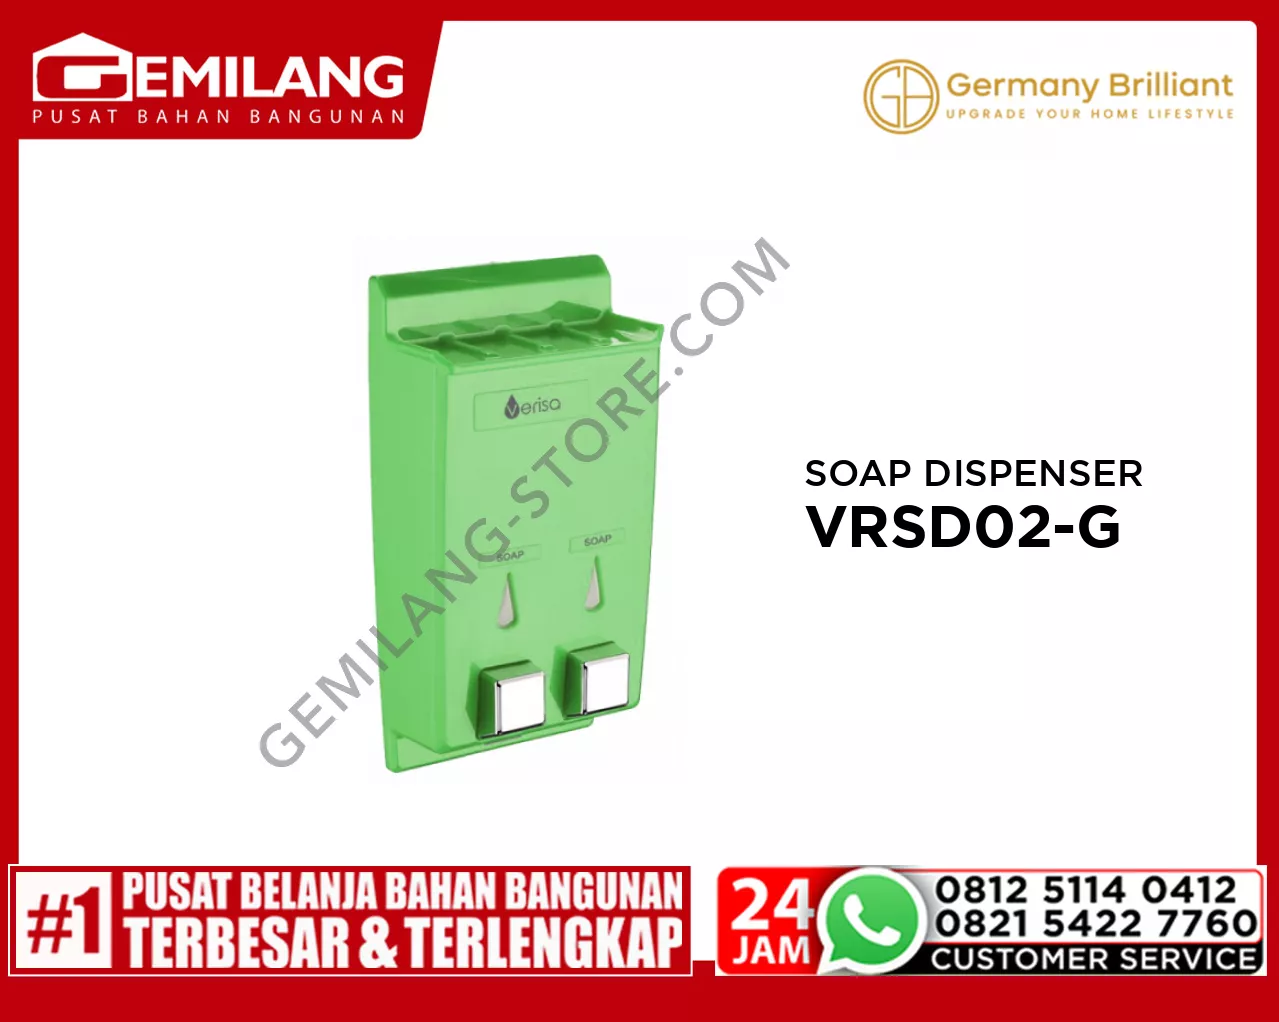 GERMANY BRILLIANT SOAP DISPENSER VRSD02-G GREEN